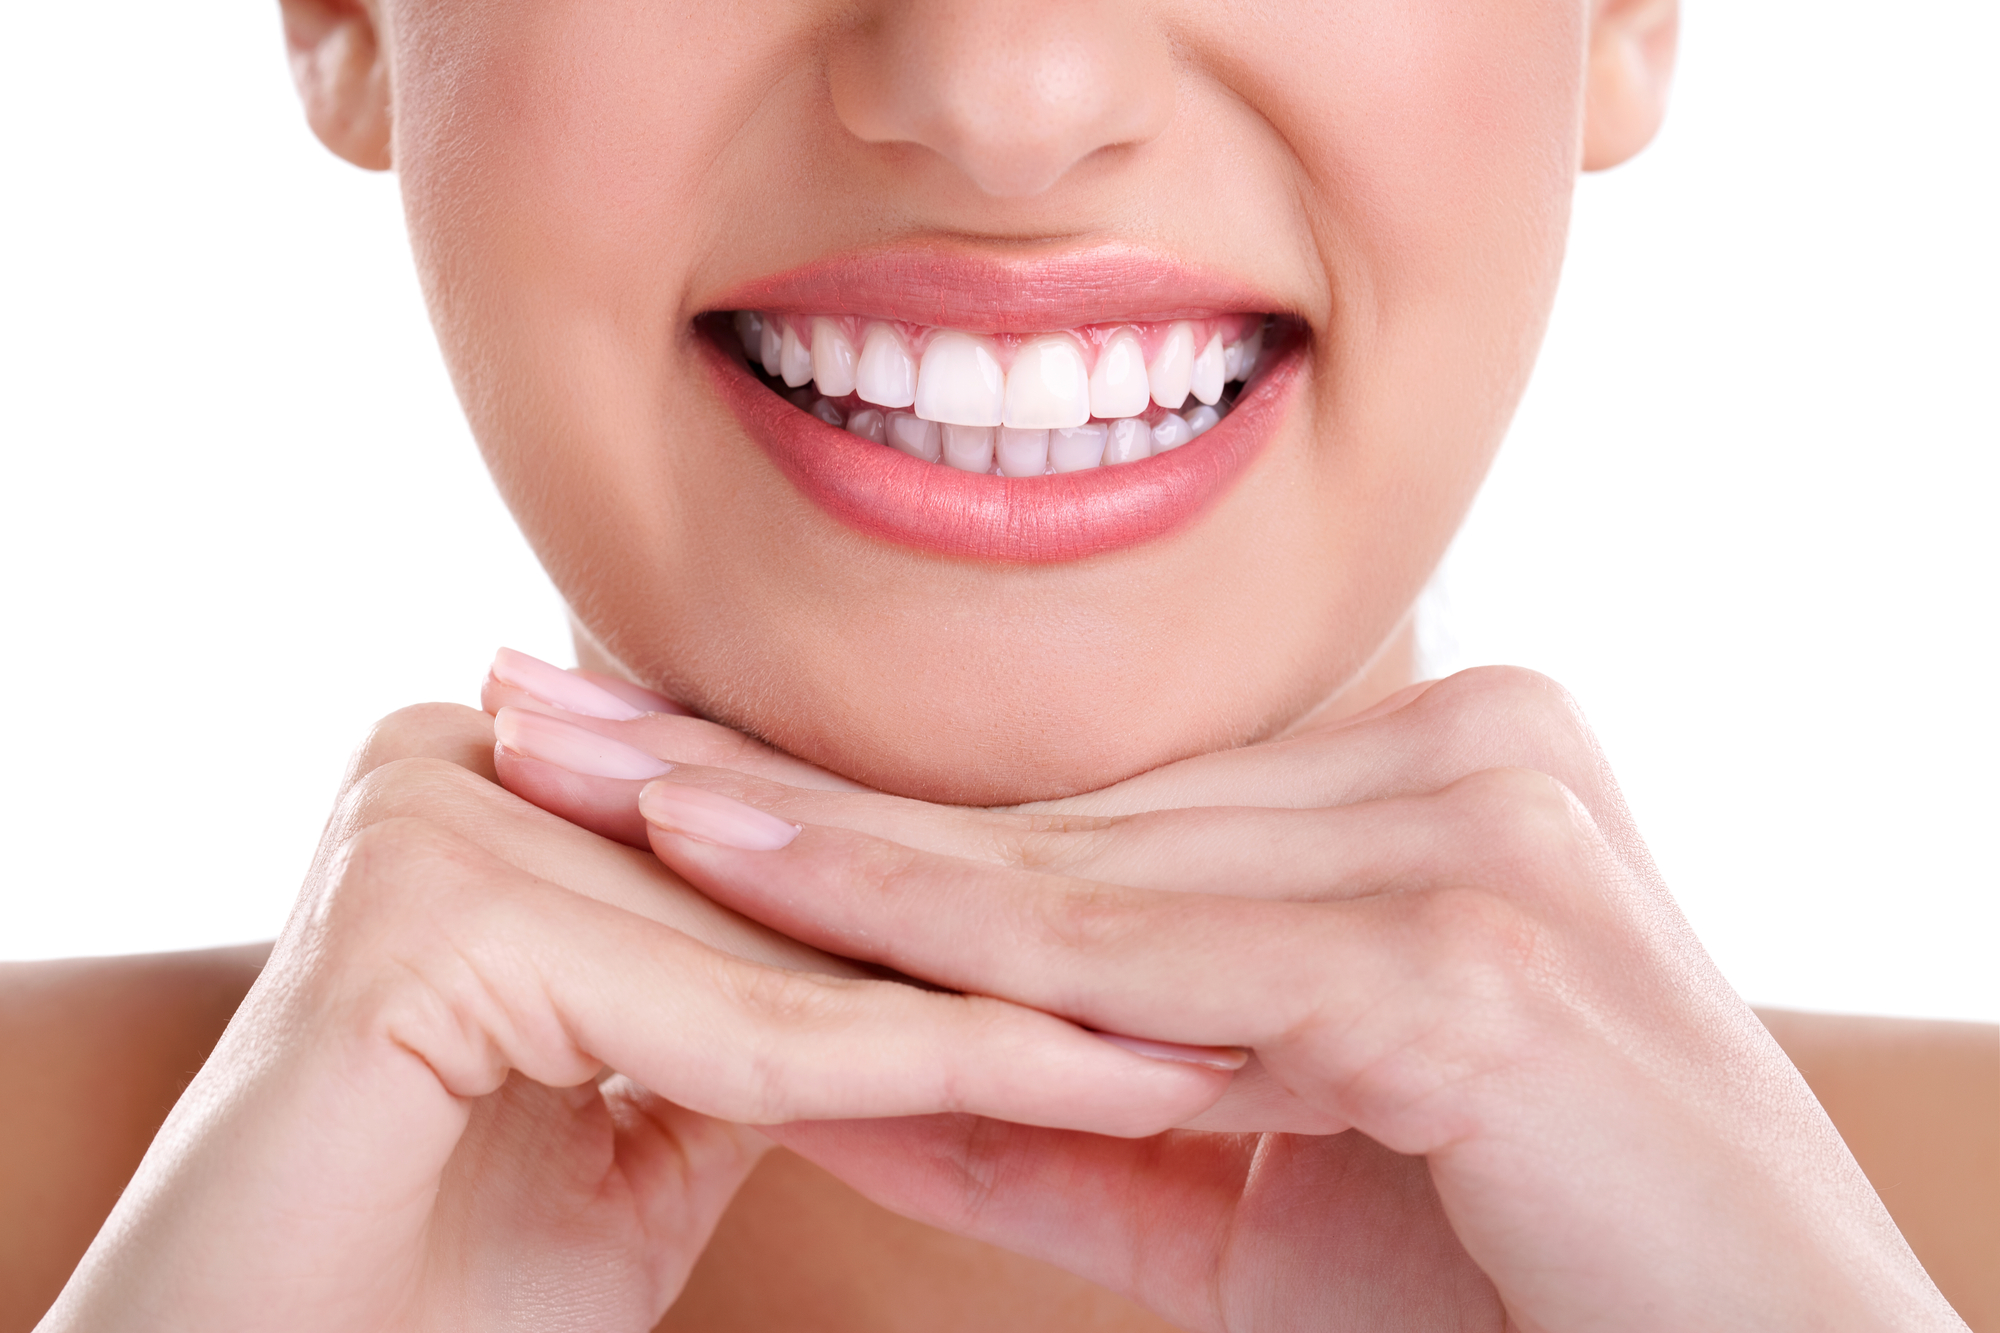 8 Teeth Whitening FAQs